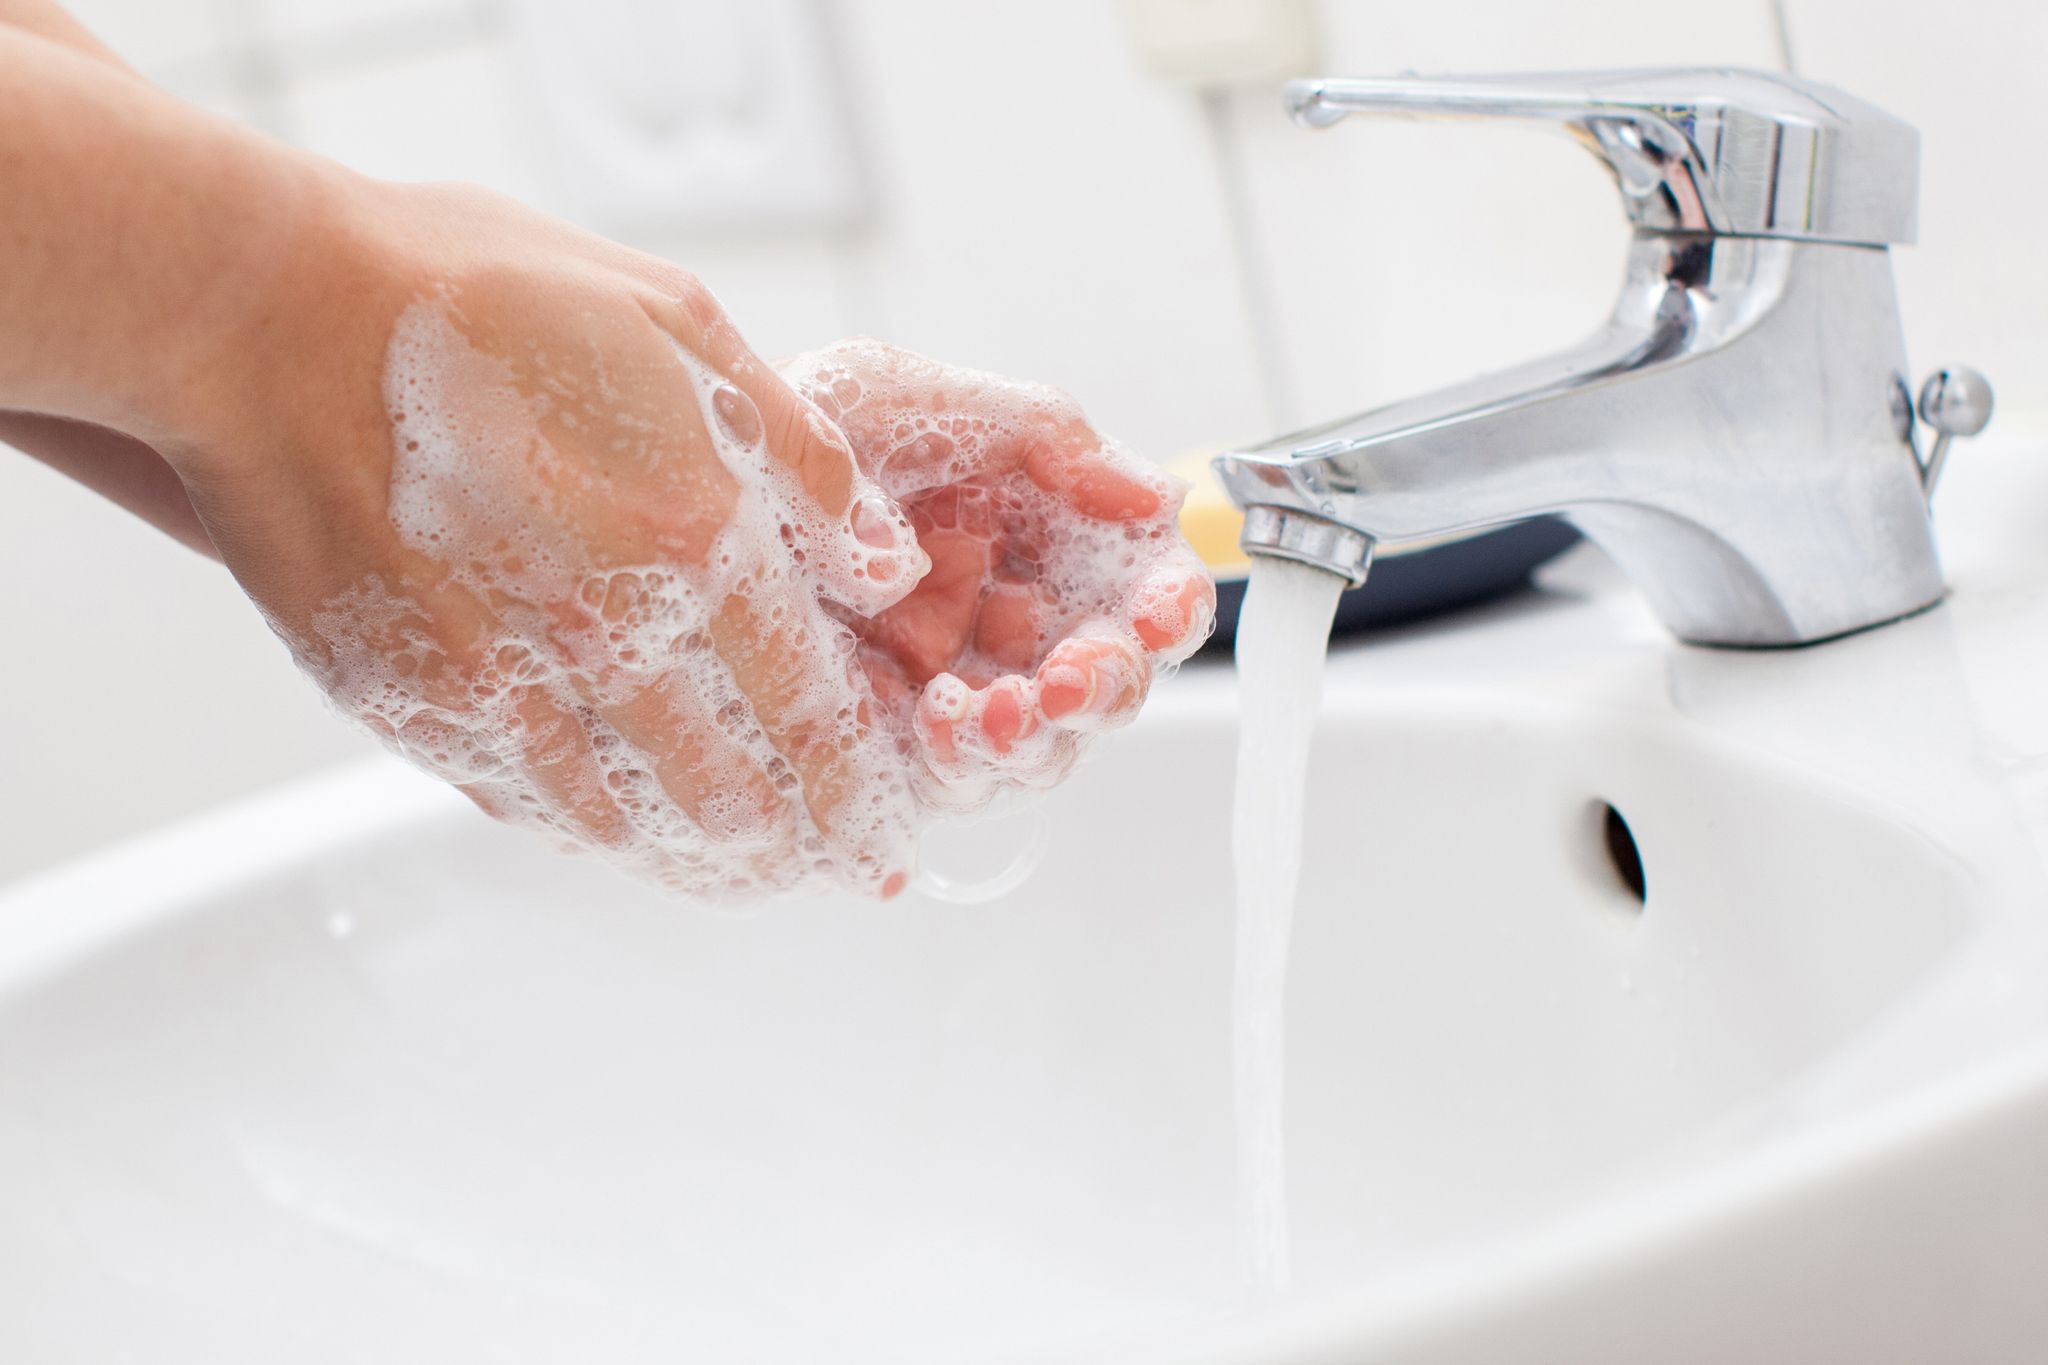 Día Mundial del lavado de manos: cuáles son los 5 pasos esenciales para hacerlo bien